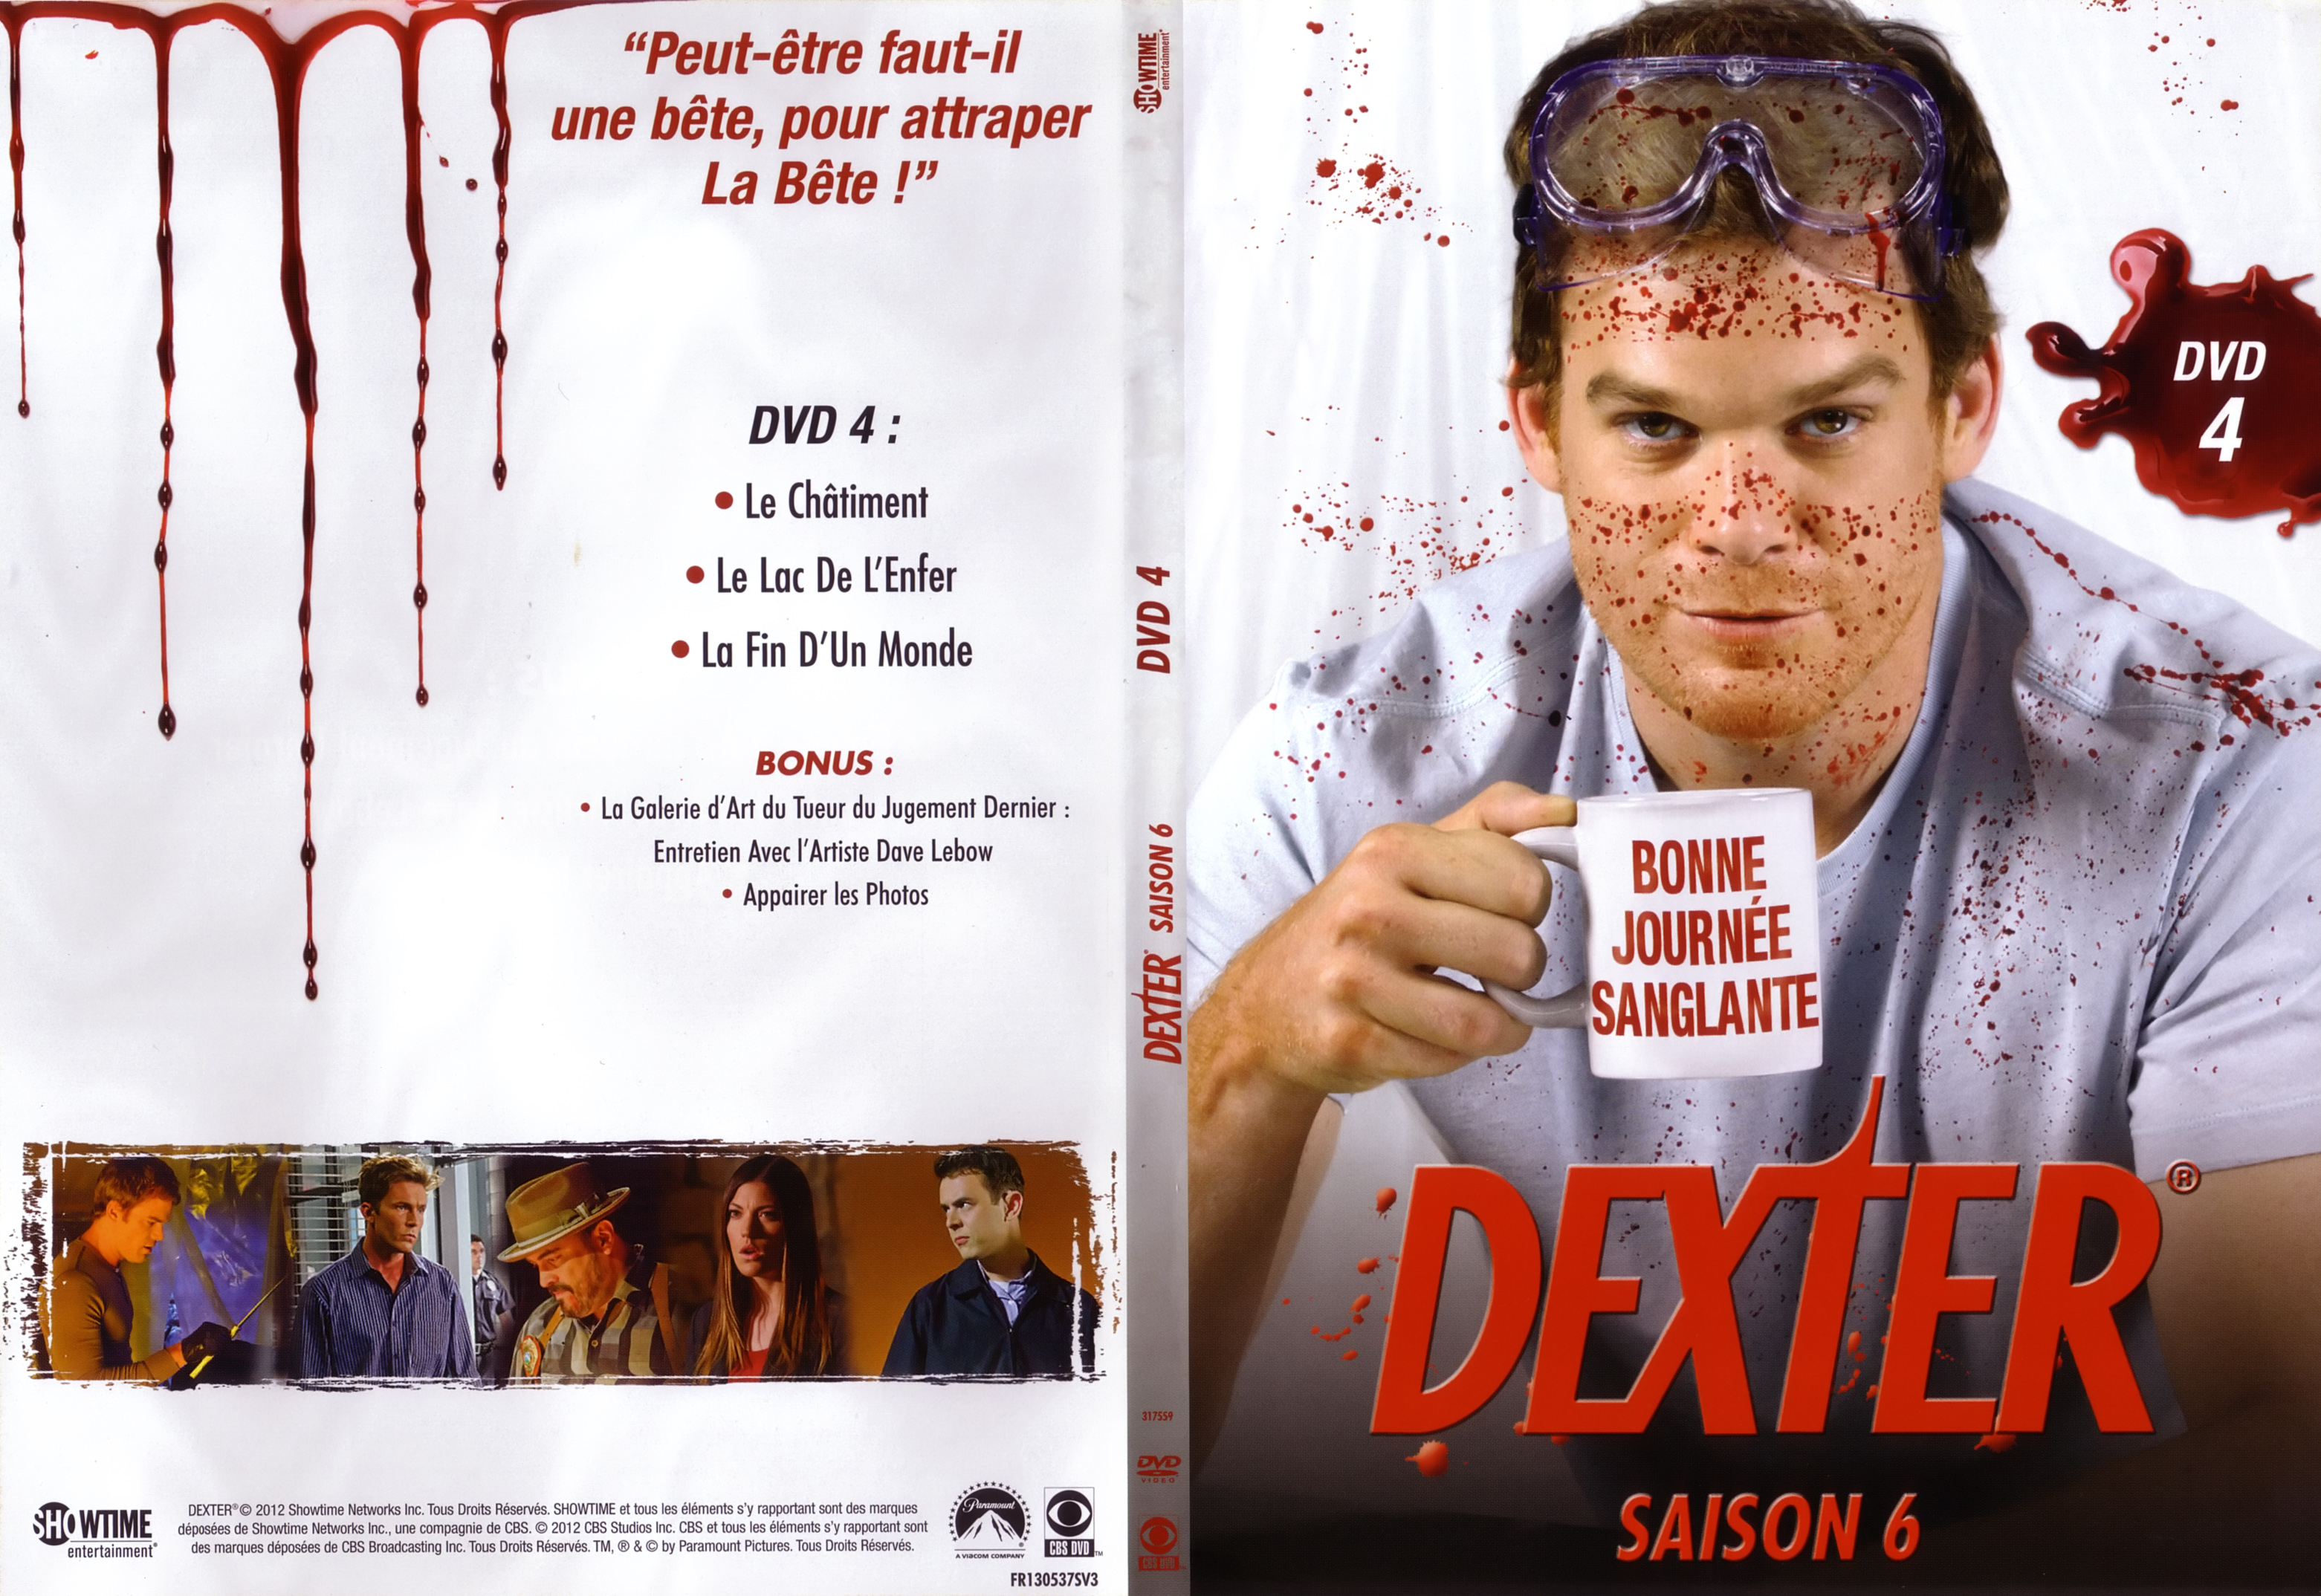 Jaquette DVD Dexter saison 6 DVD 4